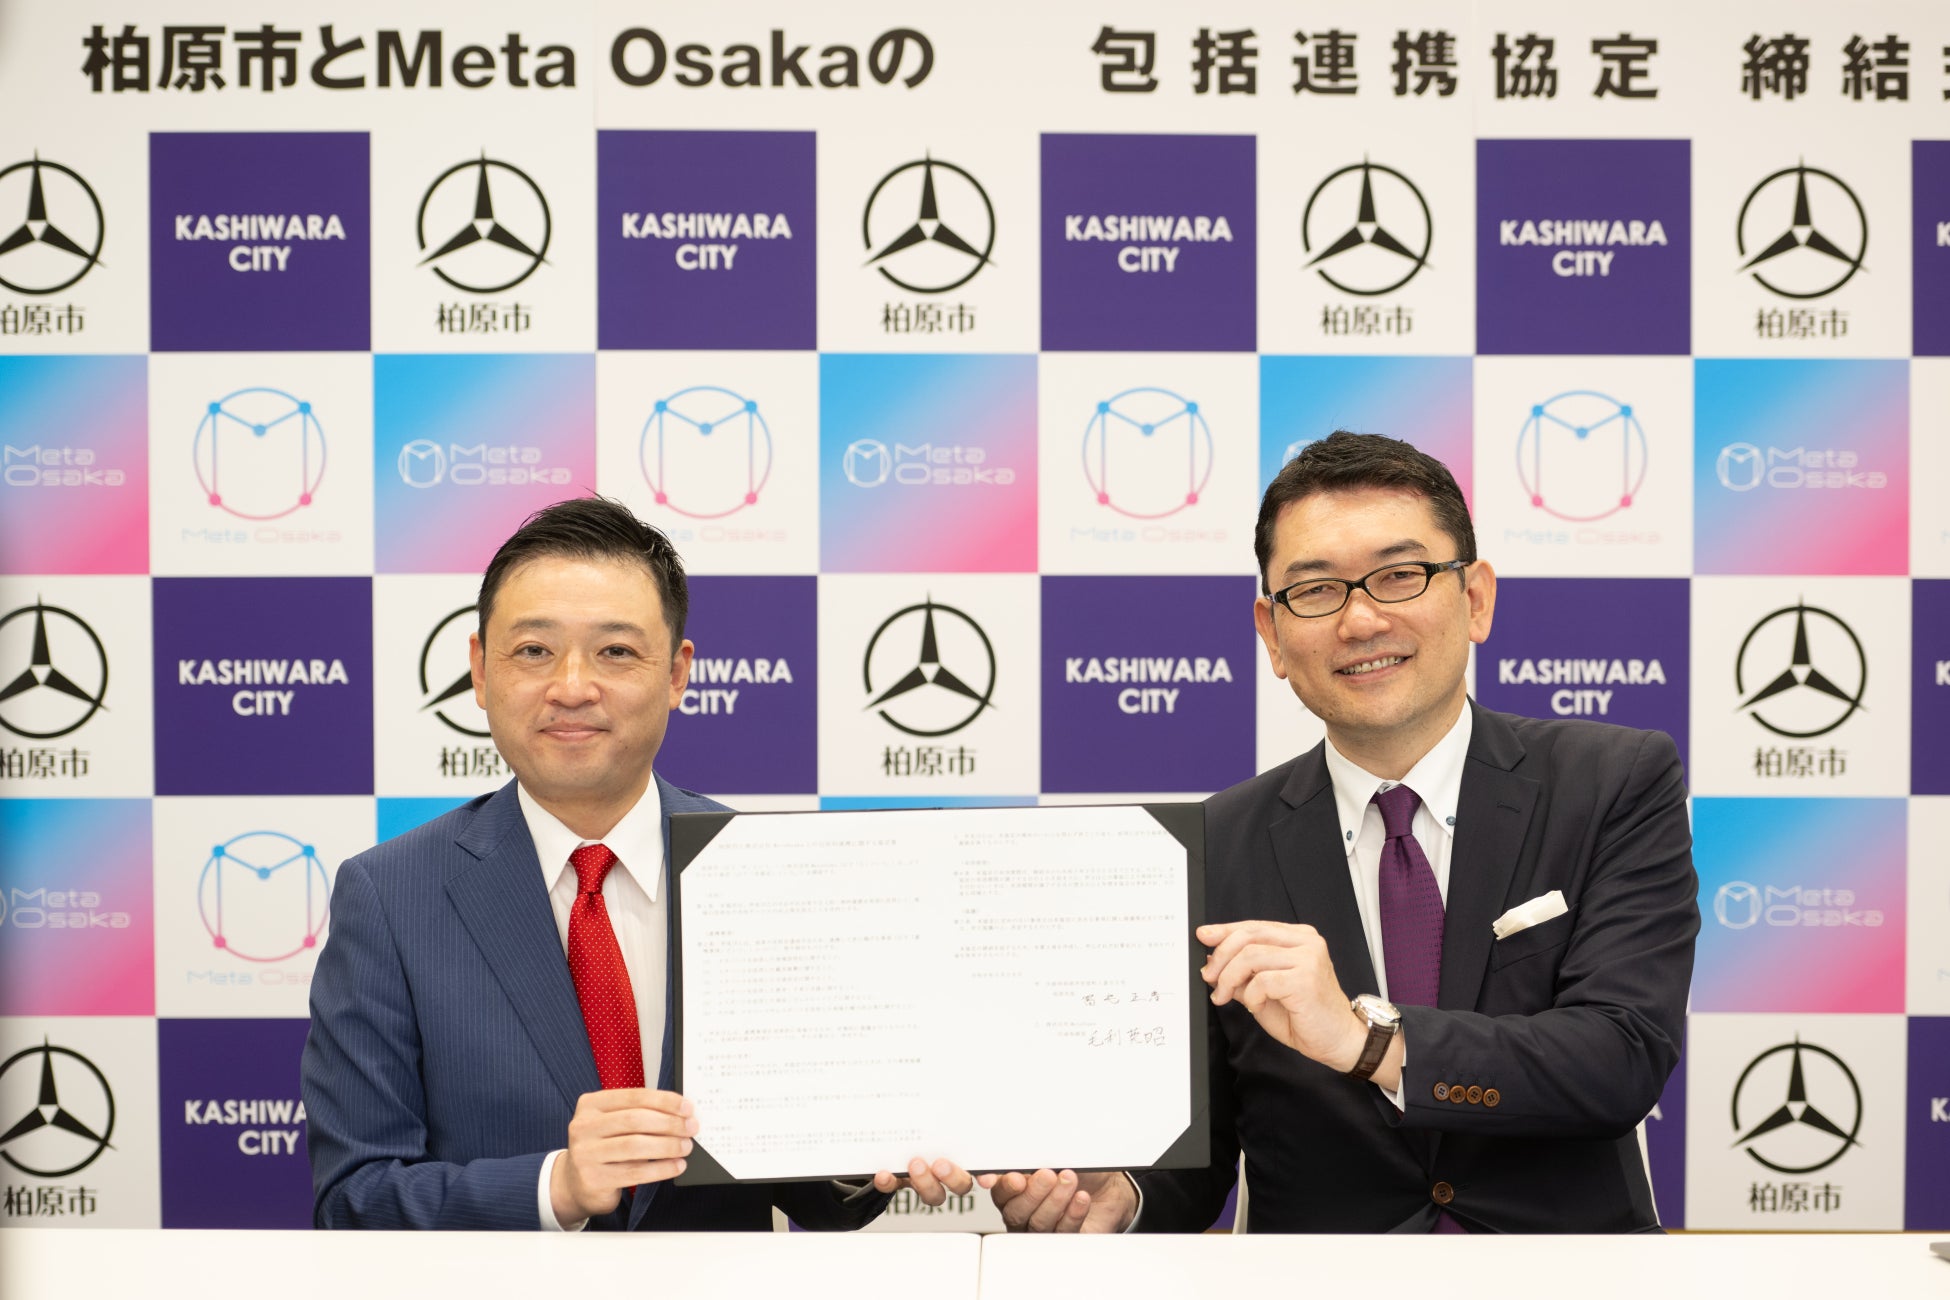 大阪府柏原市と株式会社Meta Osakaがメタバース・eスポーツを活用した包括的連携に関する協定を締結しました